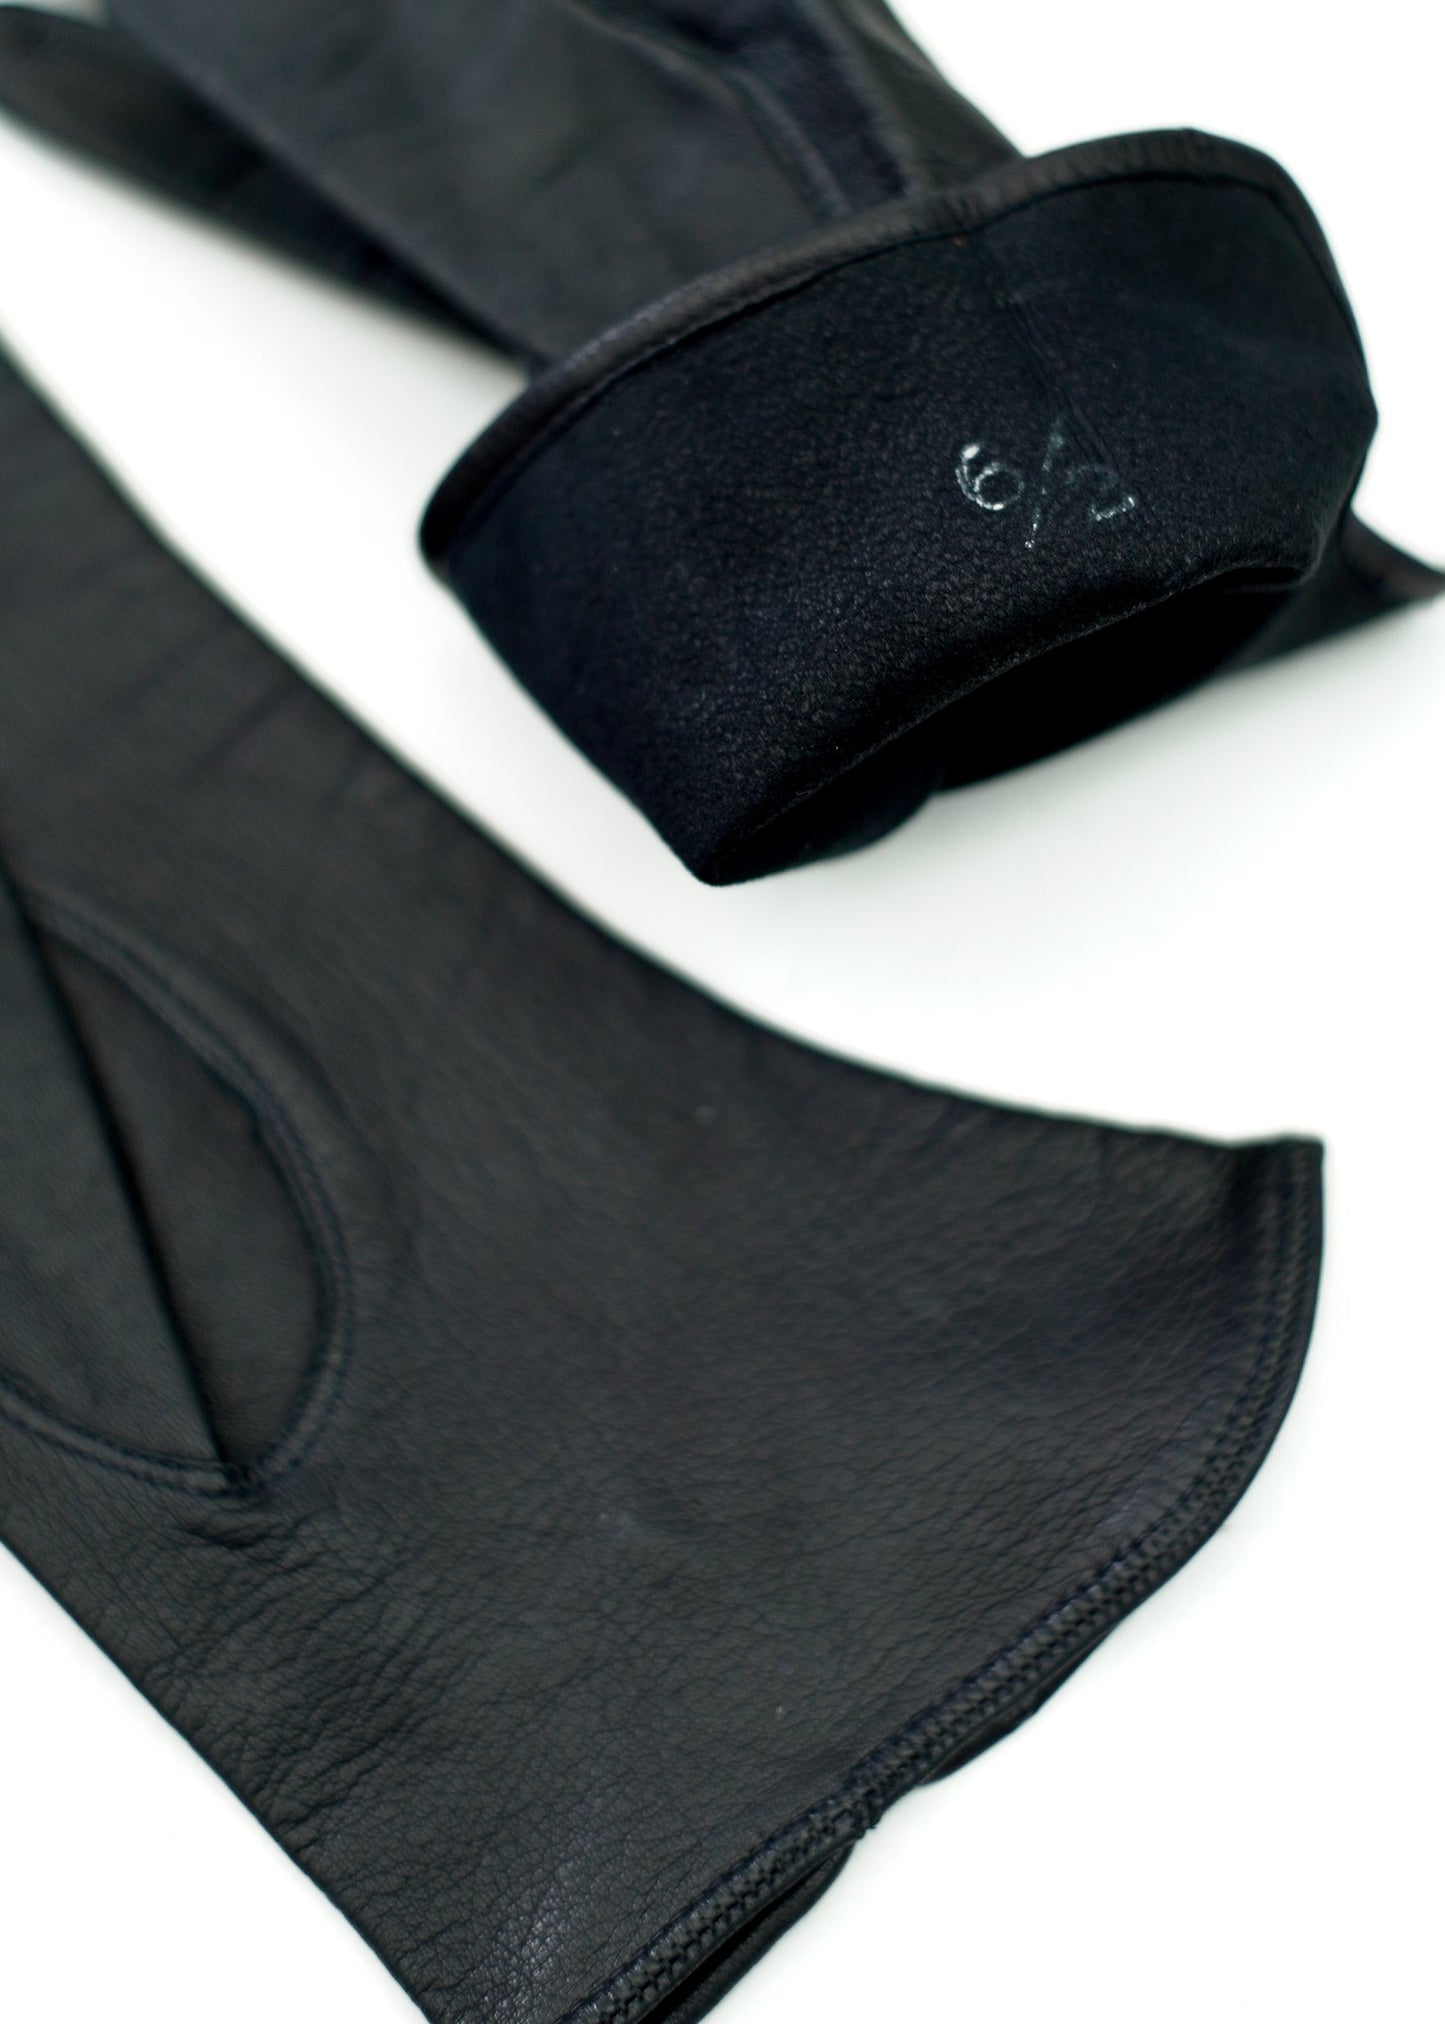 Vintage Black Leather Gloves • Wrist Length